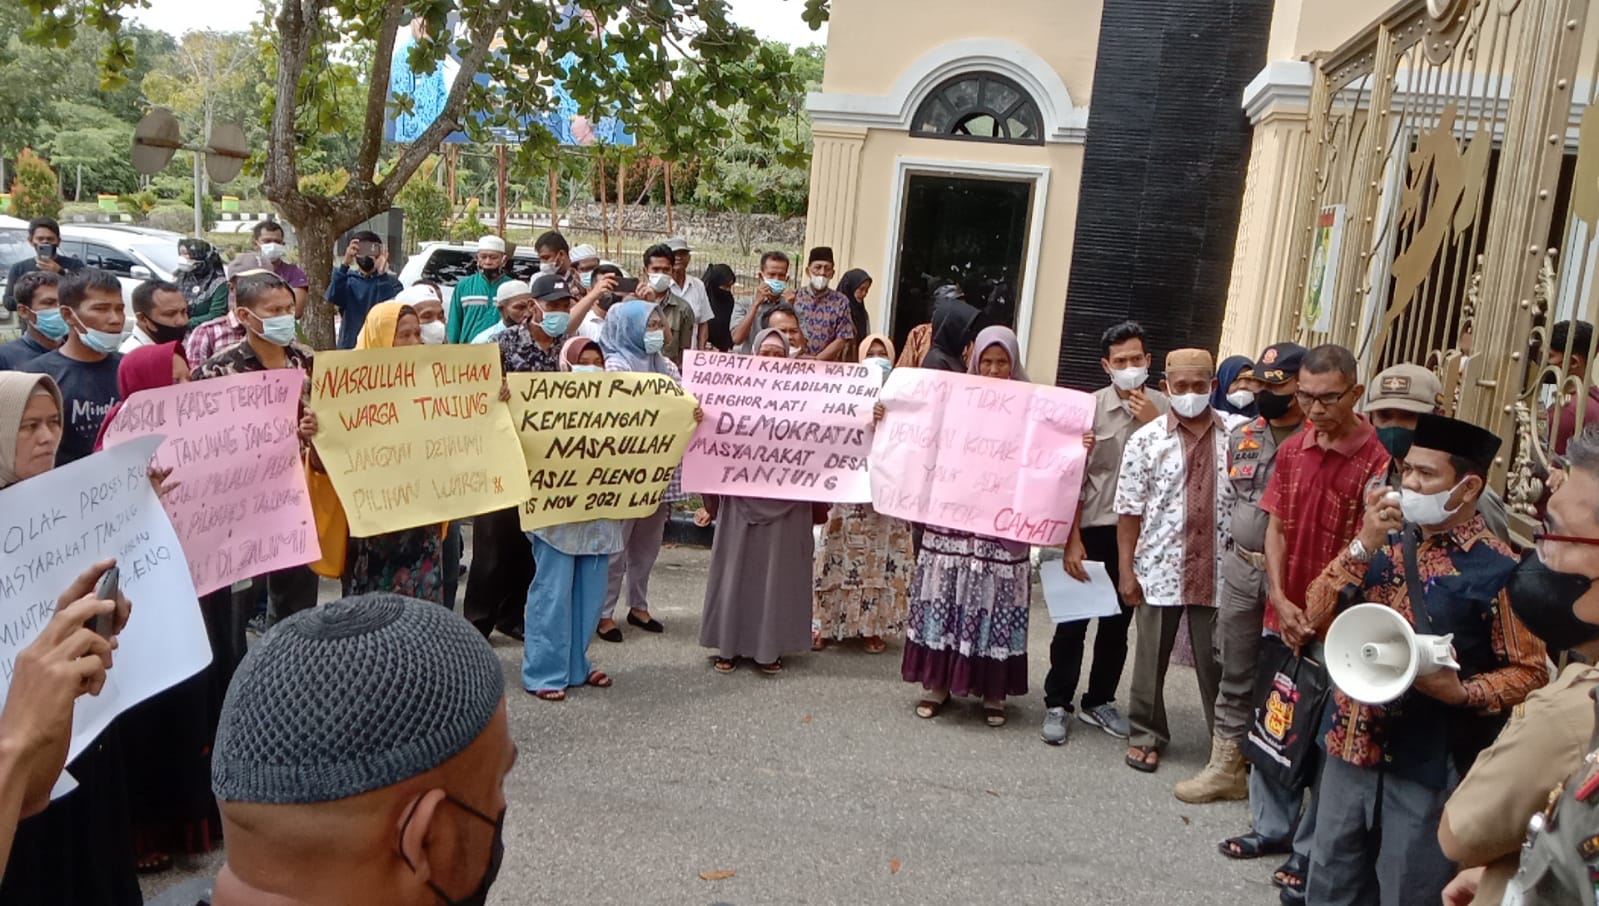 Kades Terpilih Desa Tanjung Kampar Belum Dilantik, Ini Masalahnya